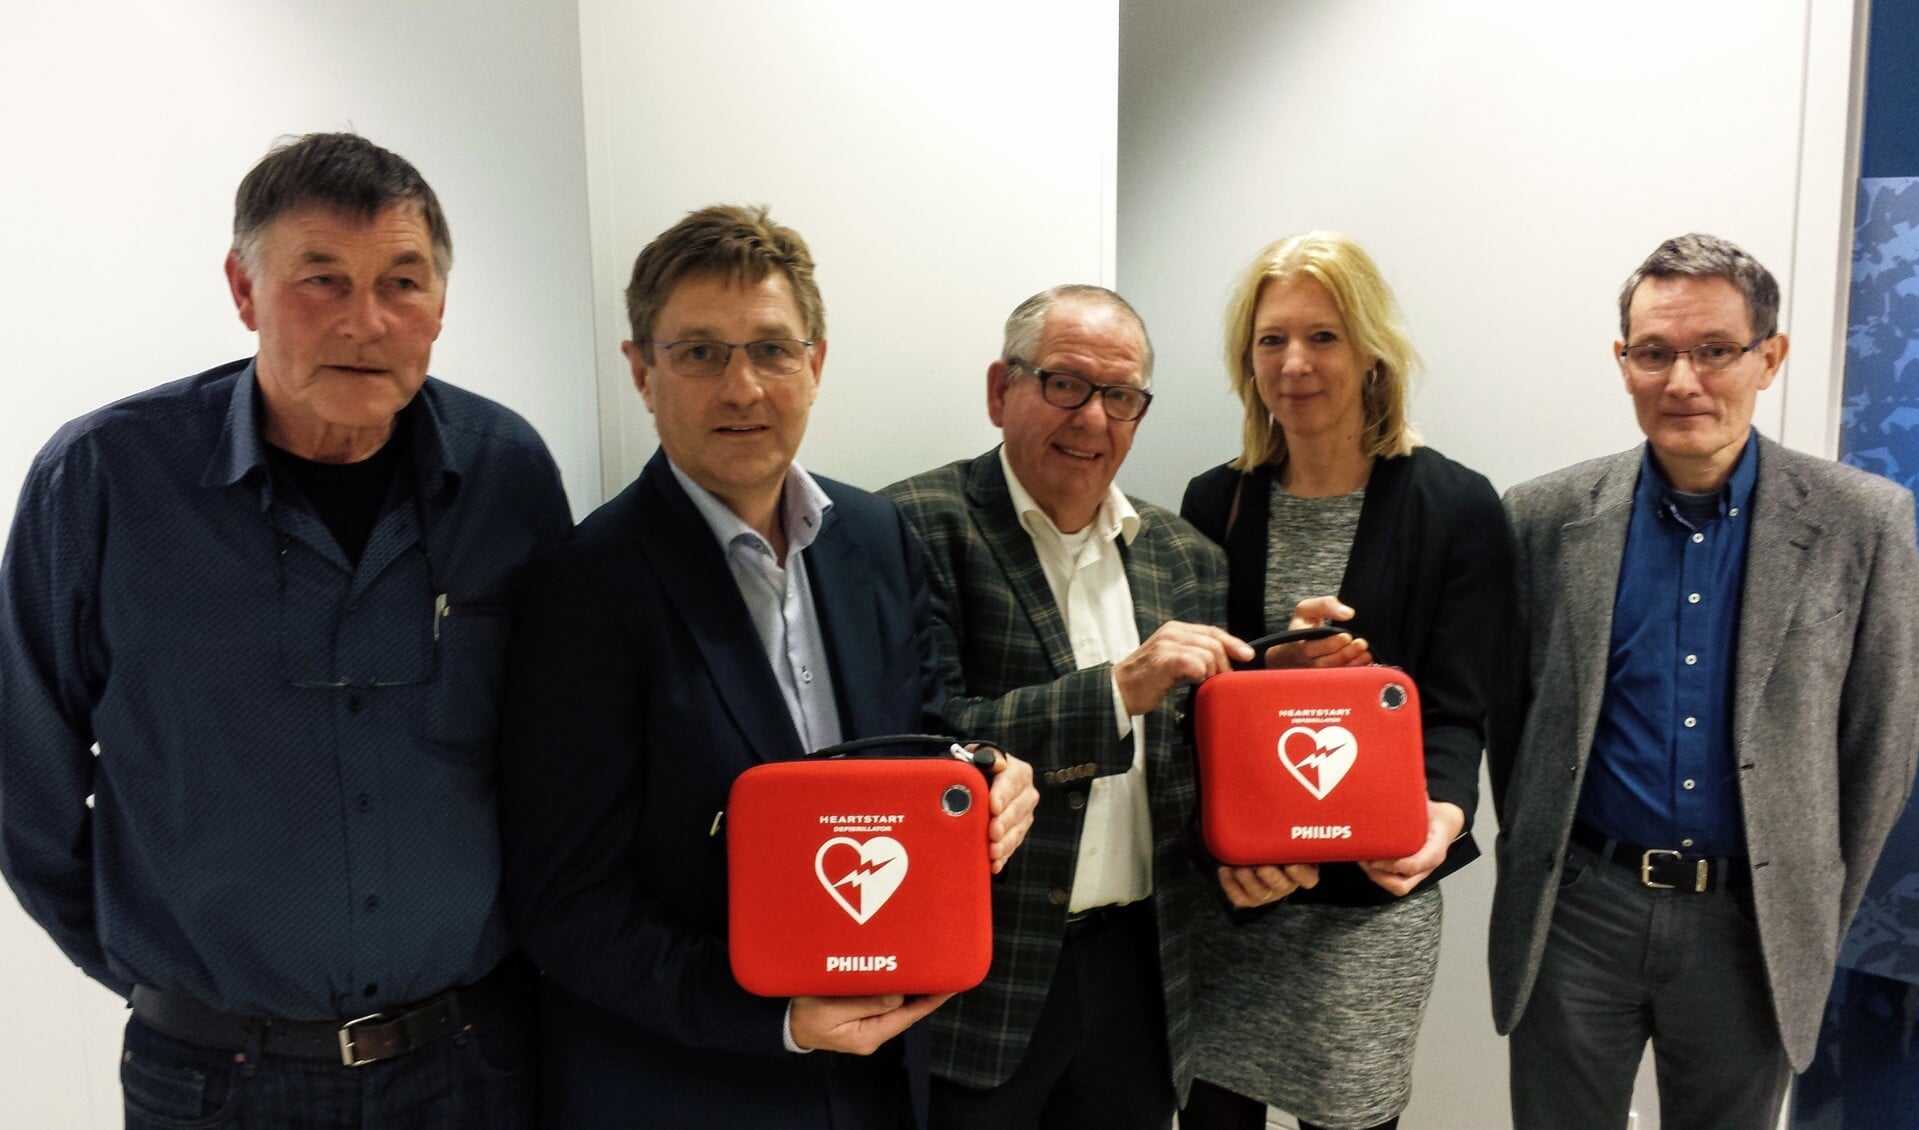 Het bestuur van de AED-stichting Bronckhorst met van links naar rechts Joan Huitink, Herman Vrielink, Rommy te Vaarwerk, Gerdien Hesselink en Ben Harting. Foto: Luuk Stam